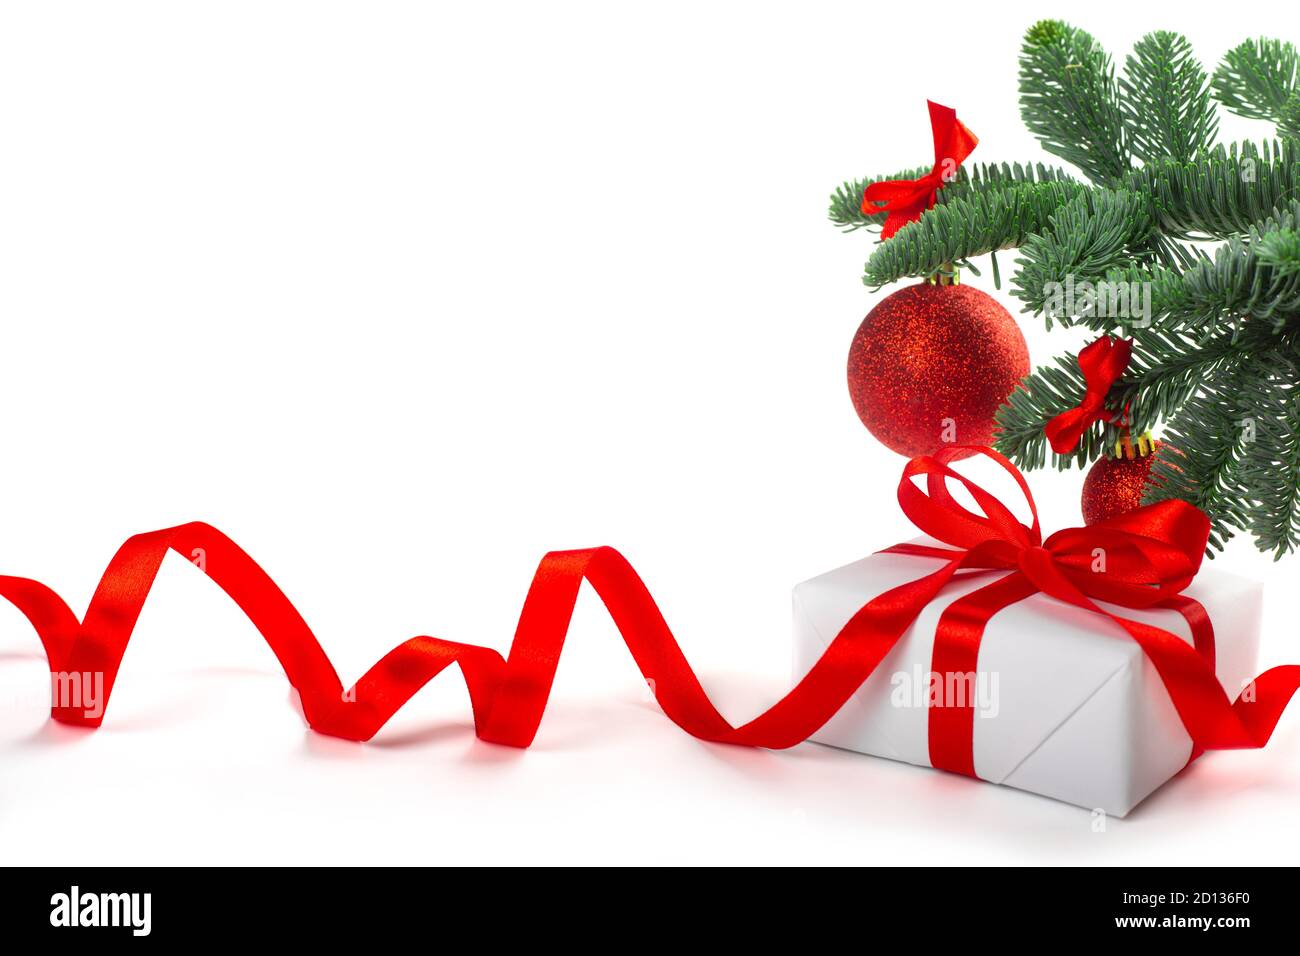 Weiße Feiertag Geschenk-Geschenkbox mit roten Satinschleife und lockiges Band unter Weihnachtsbaum mit Kugeln, Rahmen Rahmen Design isoliert auf weißem Hintergrund Stockfoto